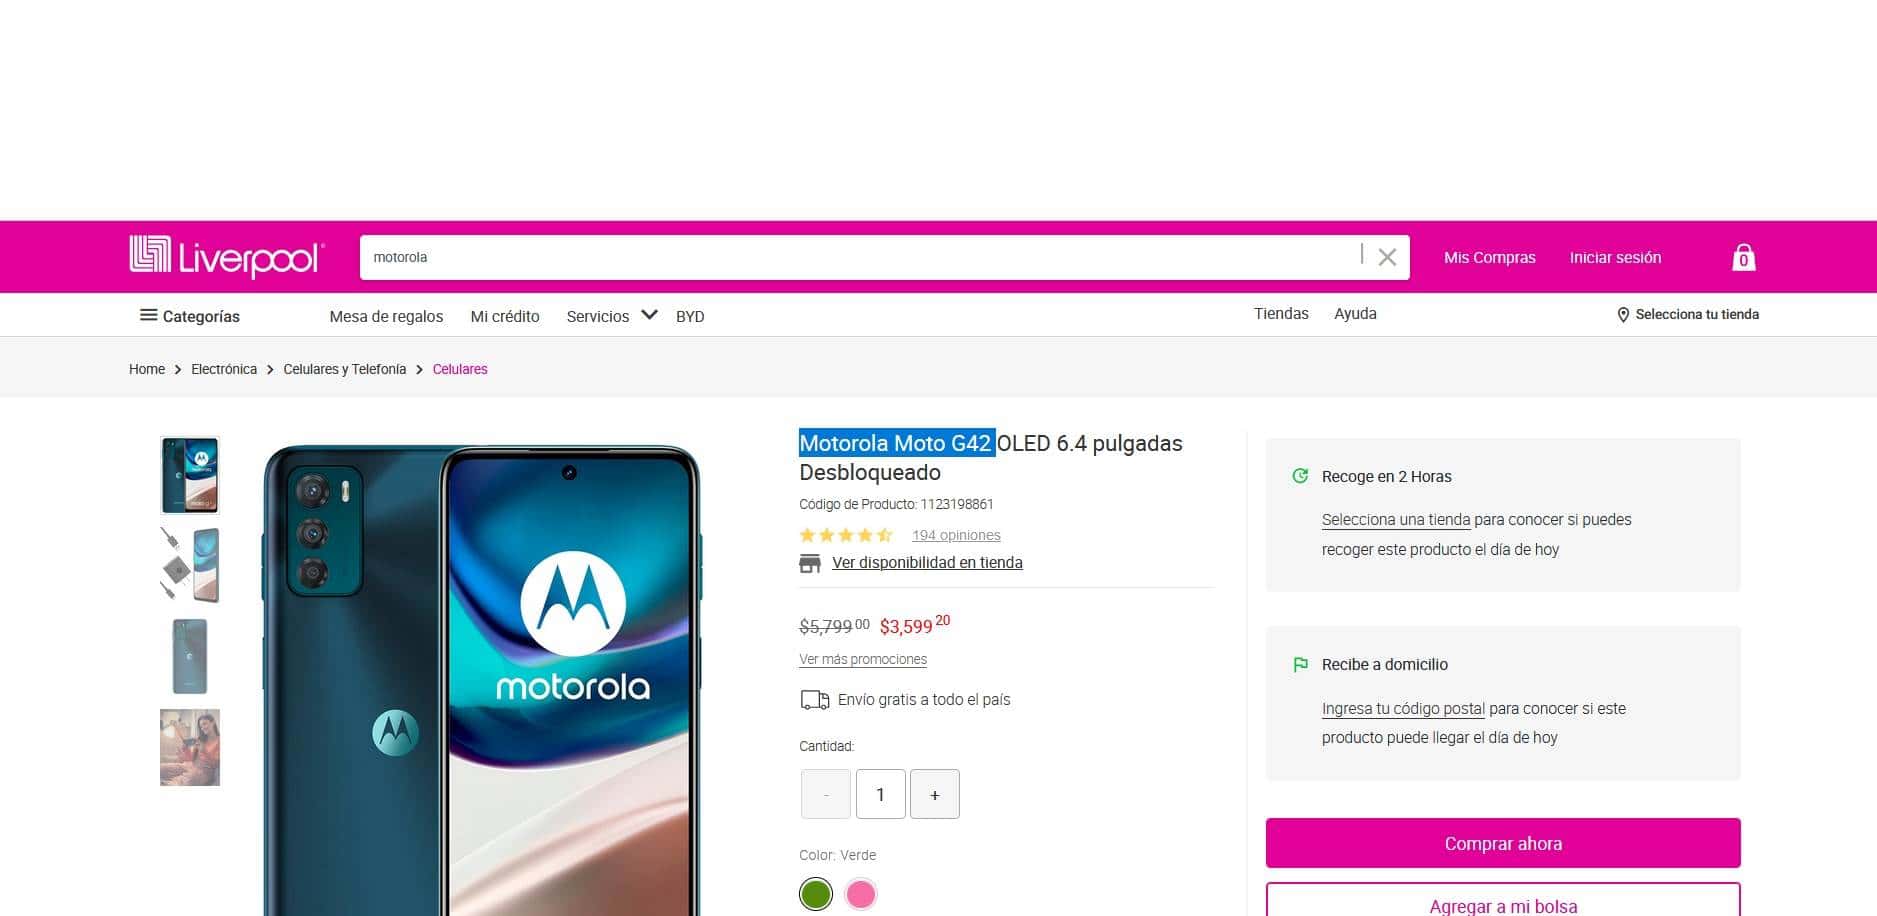 Smartphone Motorola Moto G42, forma parte de la gama media